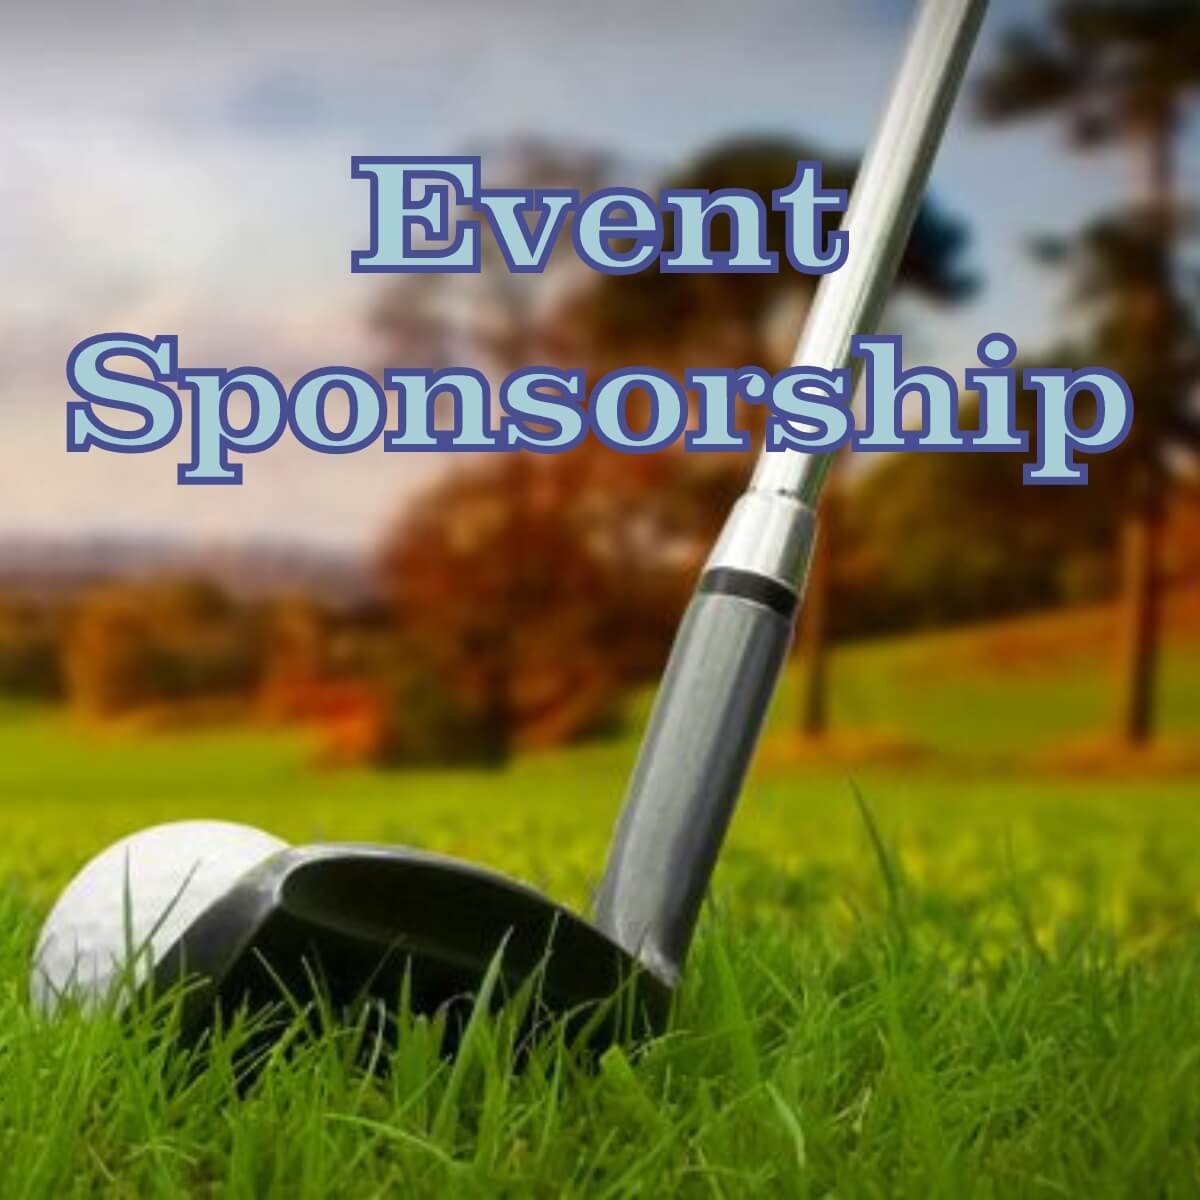 John Wilson Golf Tournament Sponsorships